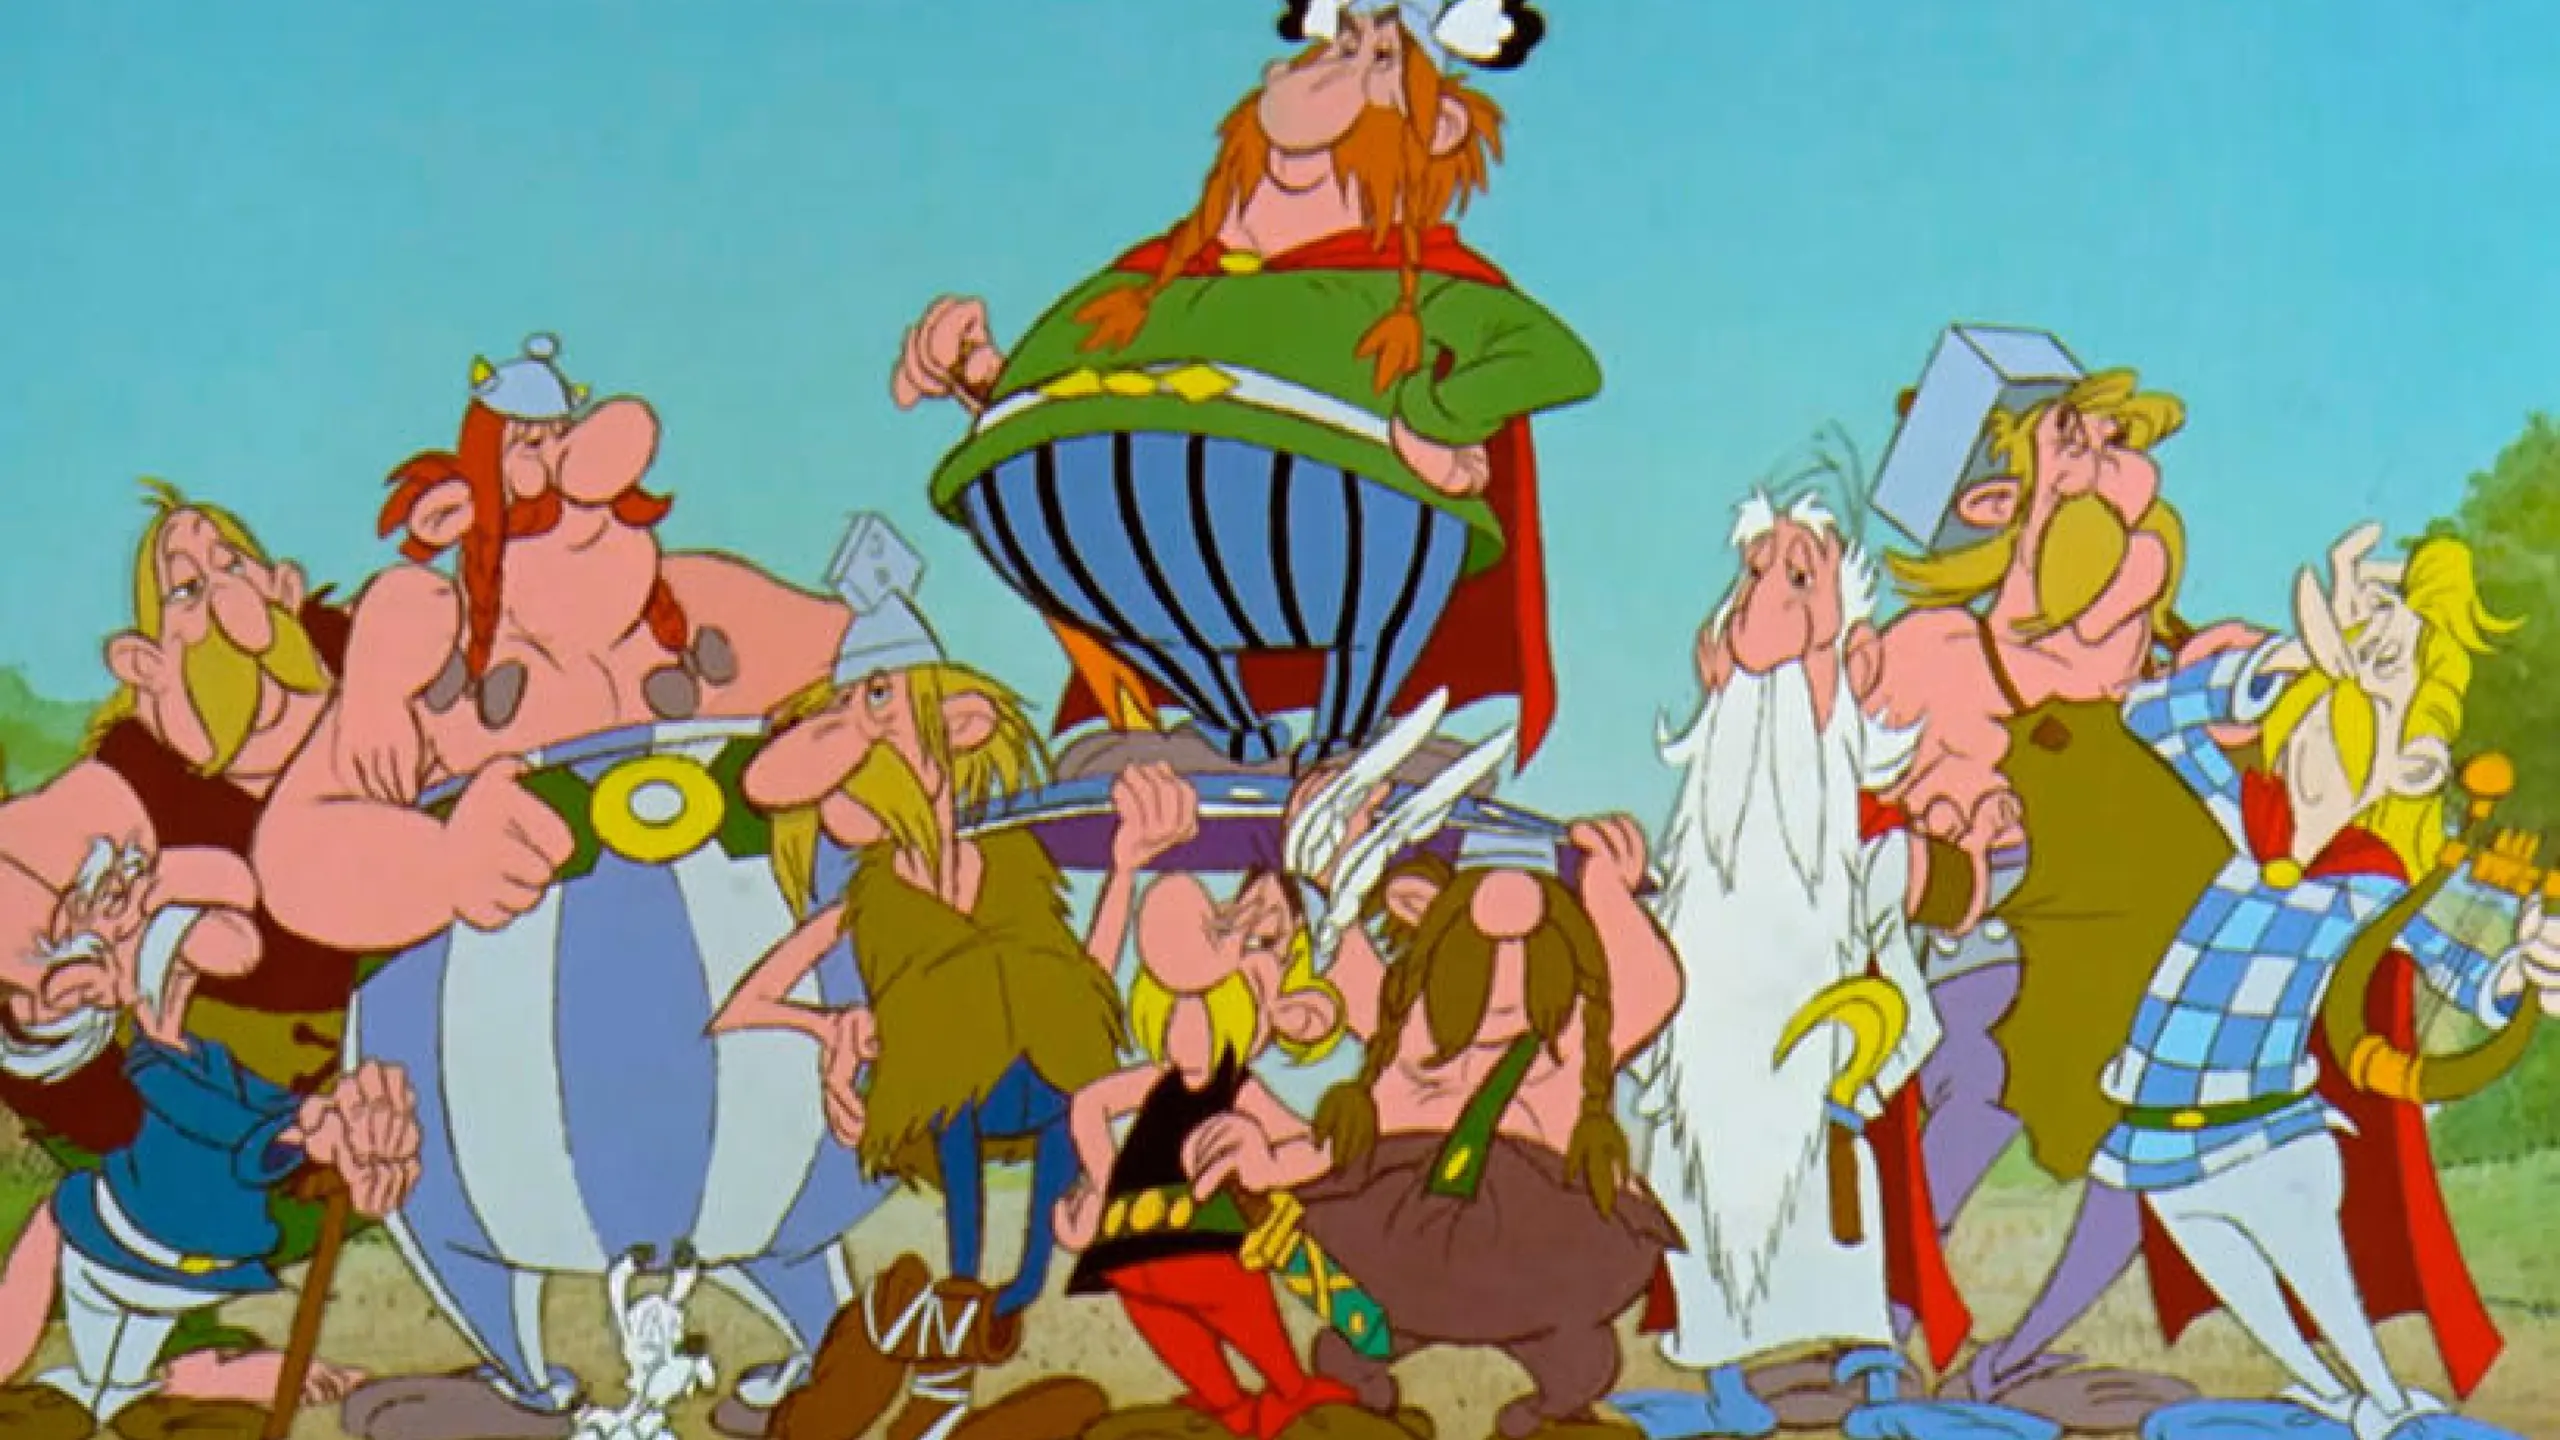 Die Zeichentrickfilme rund um Pfiffikus Asterix und den kugelrunden Obelix sind Kult – wir haben ihre Abenteuer im ultimativen Ranking miteinander verglichen